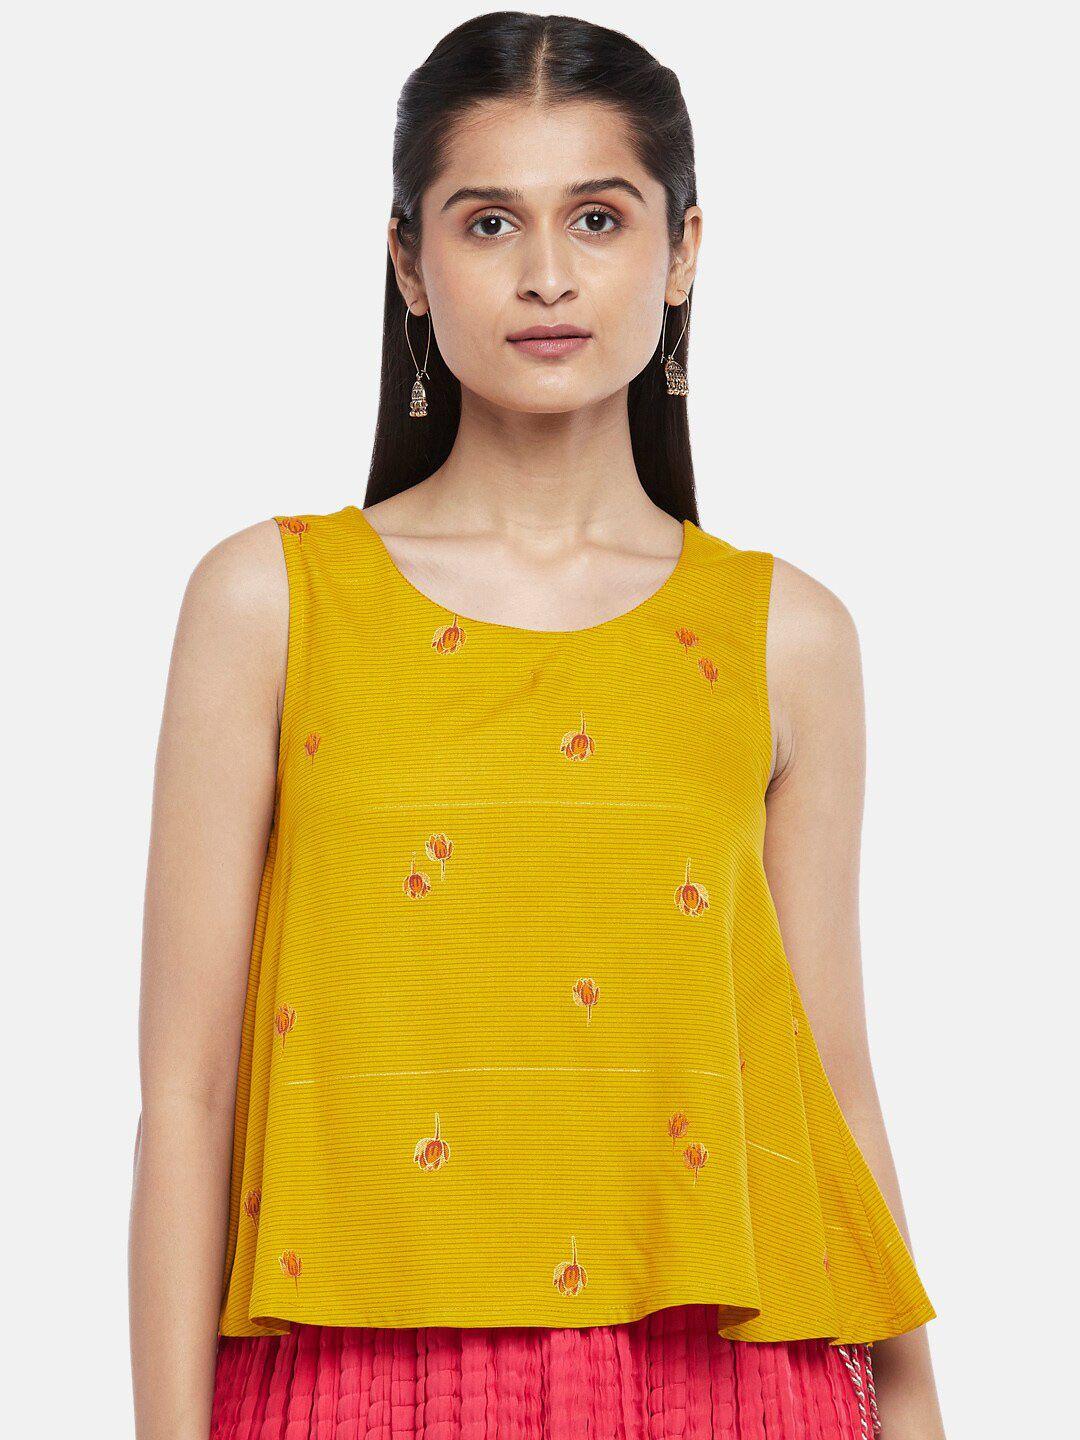 akkriti-by-pantaloons-mustard-yellow-ethnic-motifs-print-a-line-top